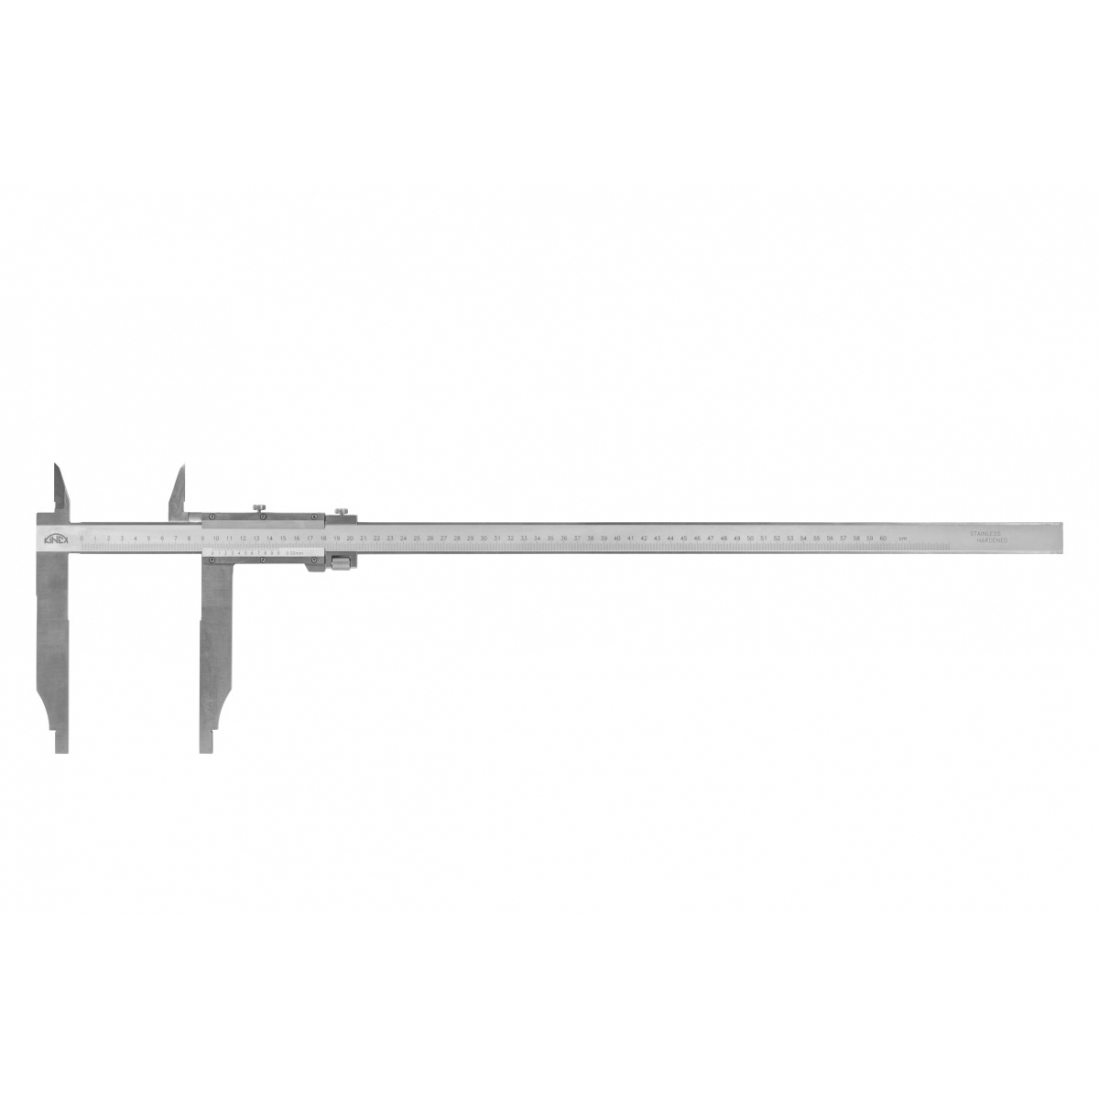 KINEX/K-MET Posuvné měřítko s jemným stavěním KINEX 2000 mm, 150 mm, 0,02 mm, s horními noži, ČSN 25 1231, DIN 862